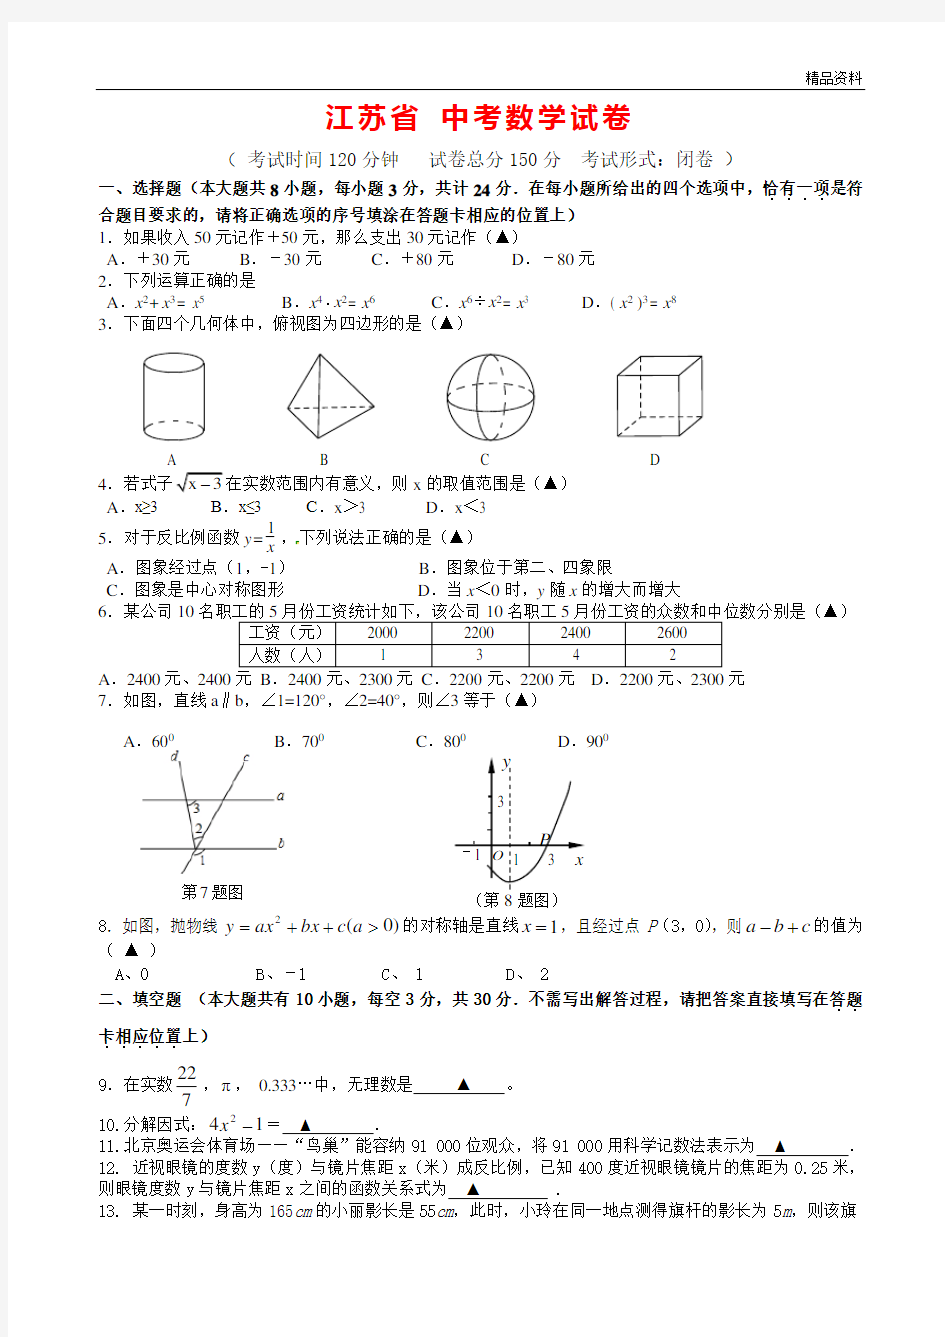 江苏省2020年中考数学试卷(含答案)